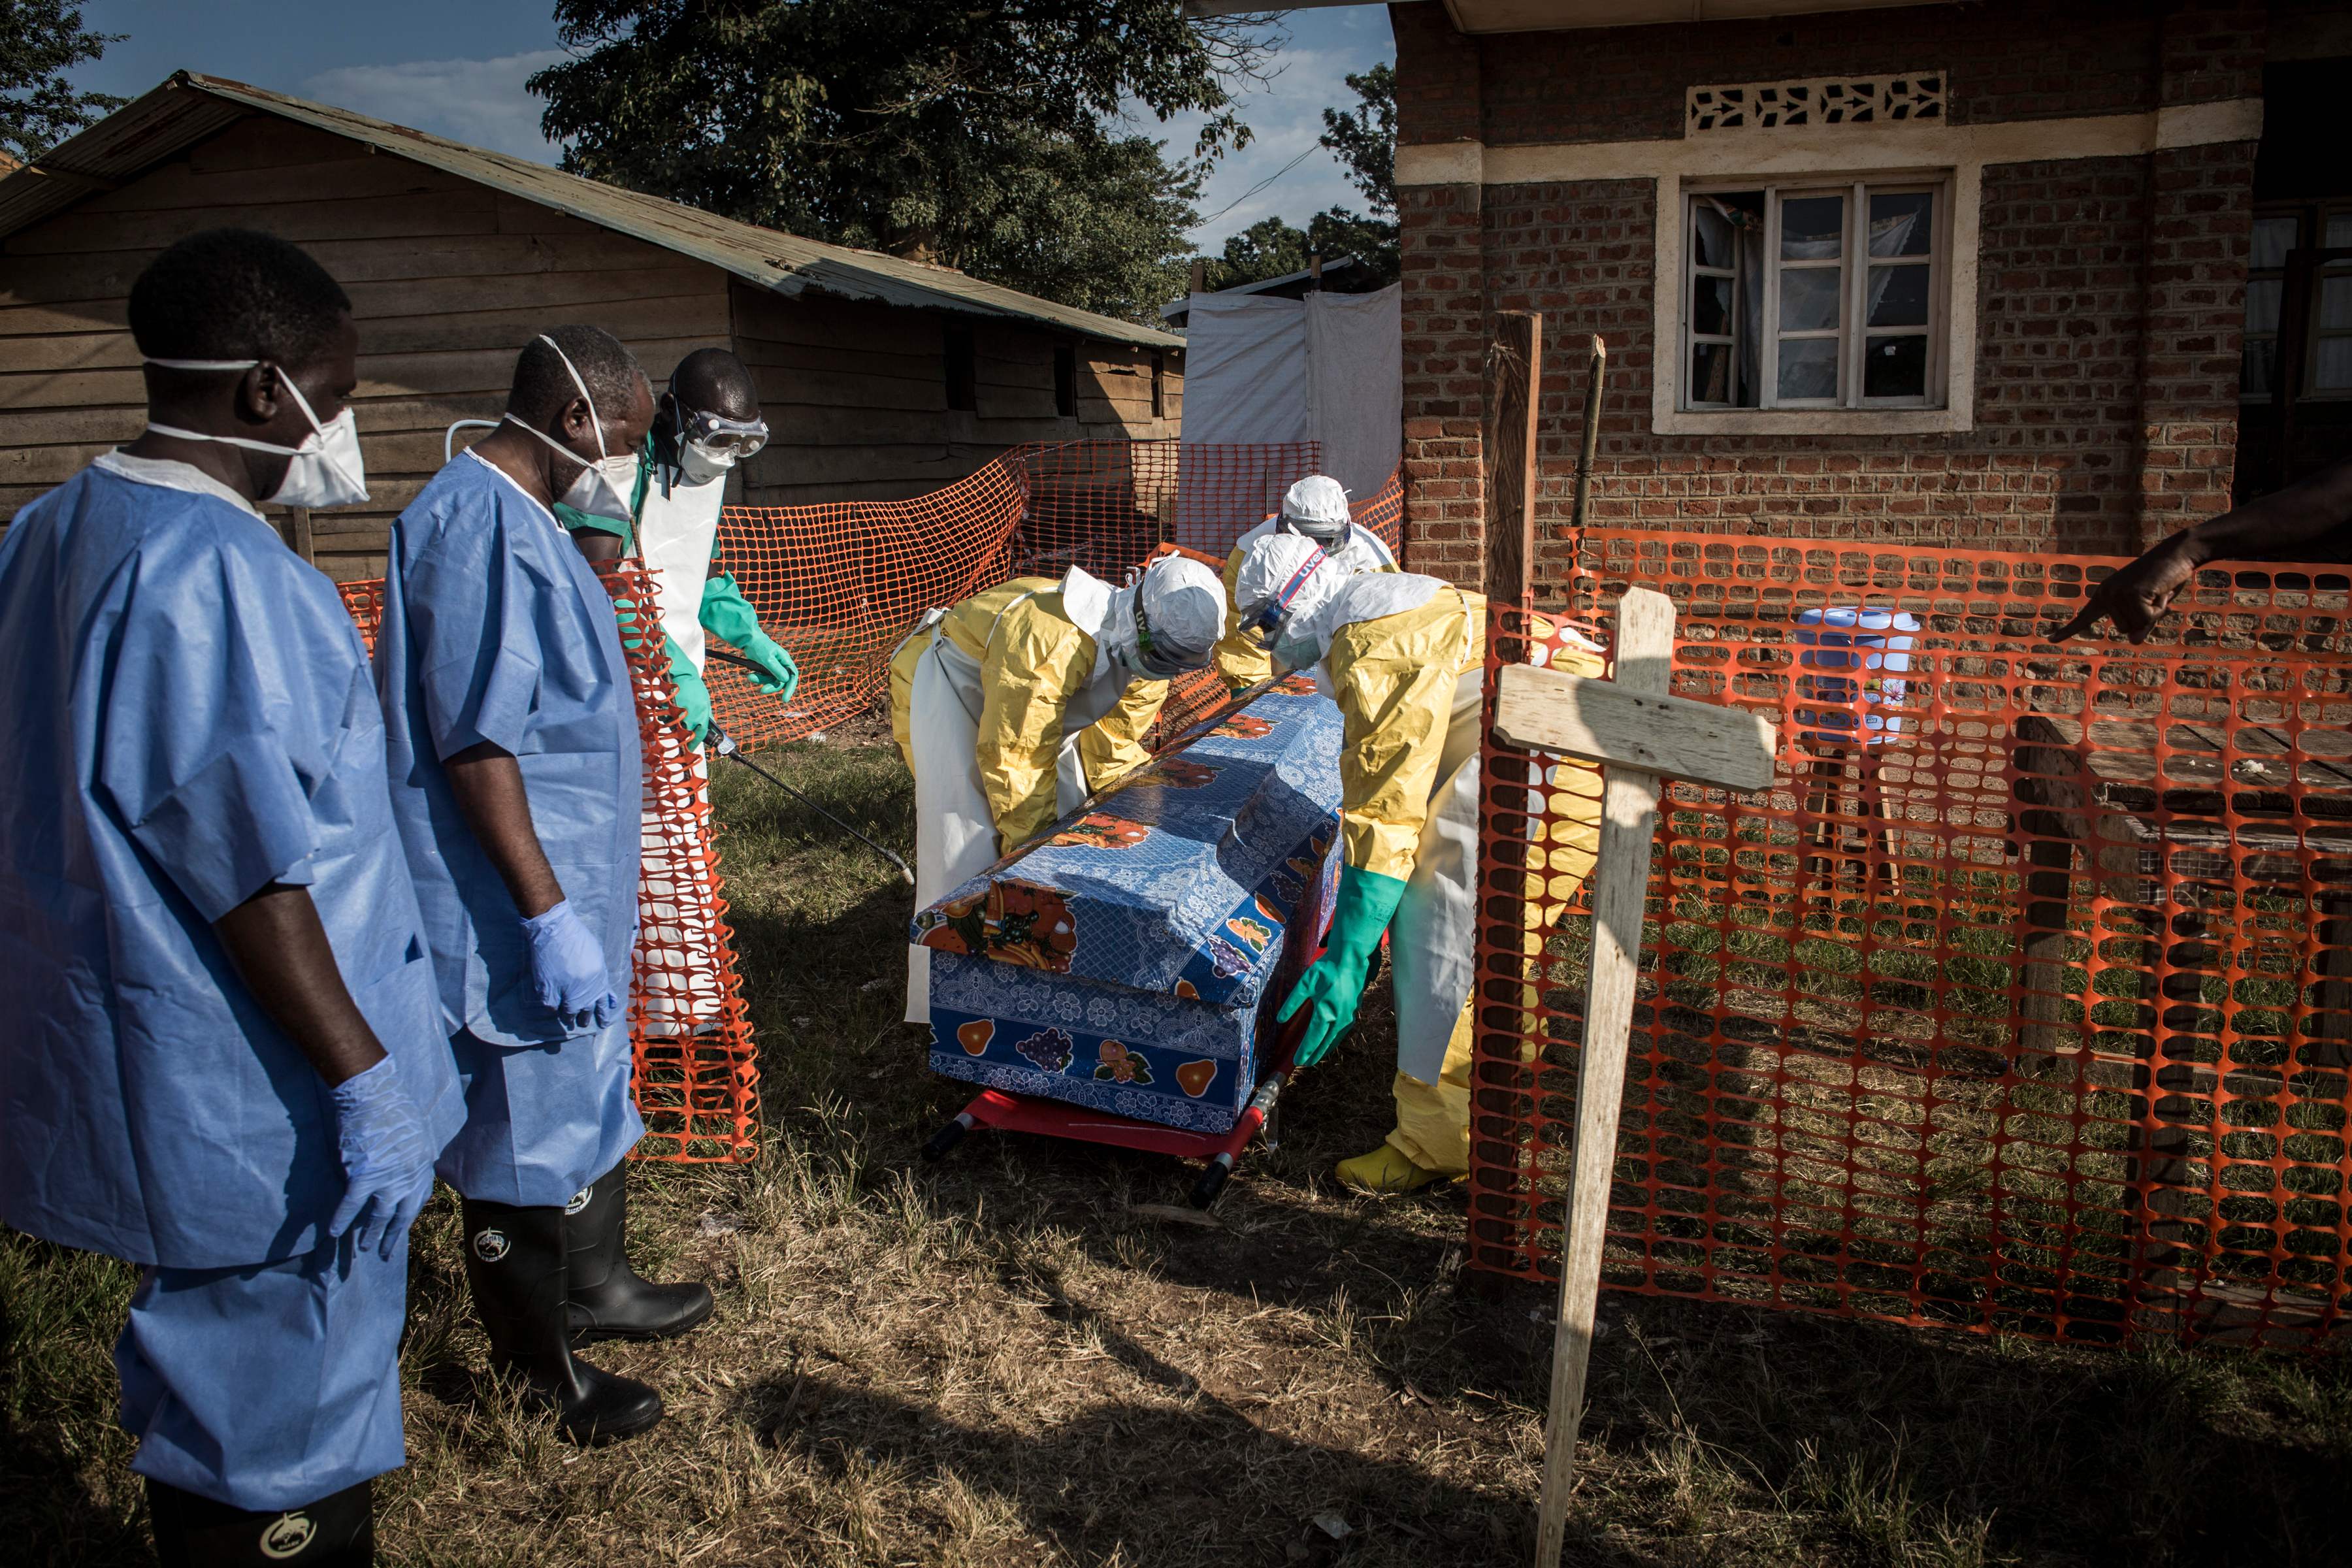 埃博拉病毒传播图片